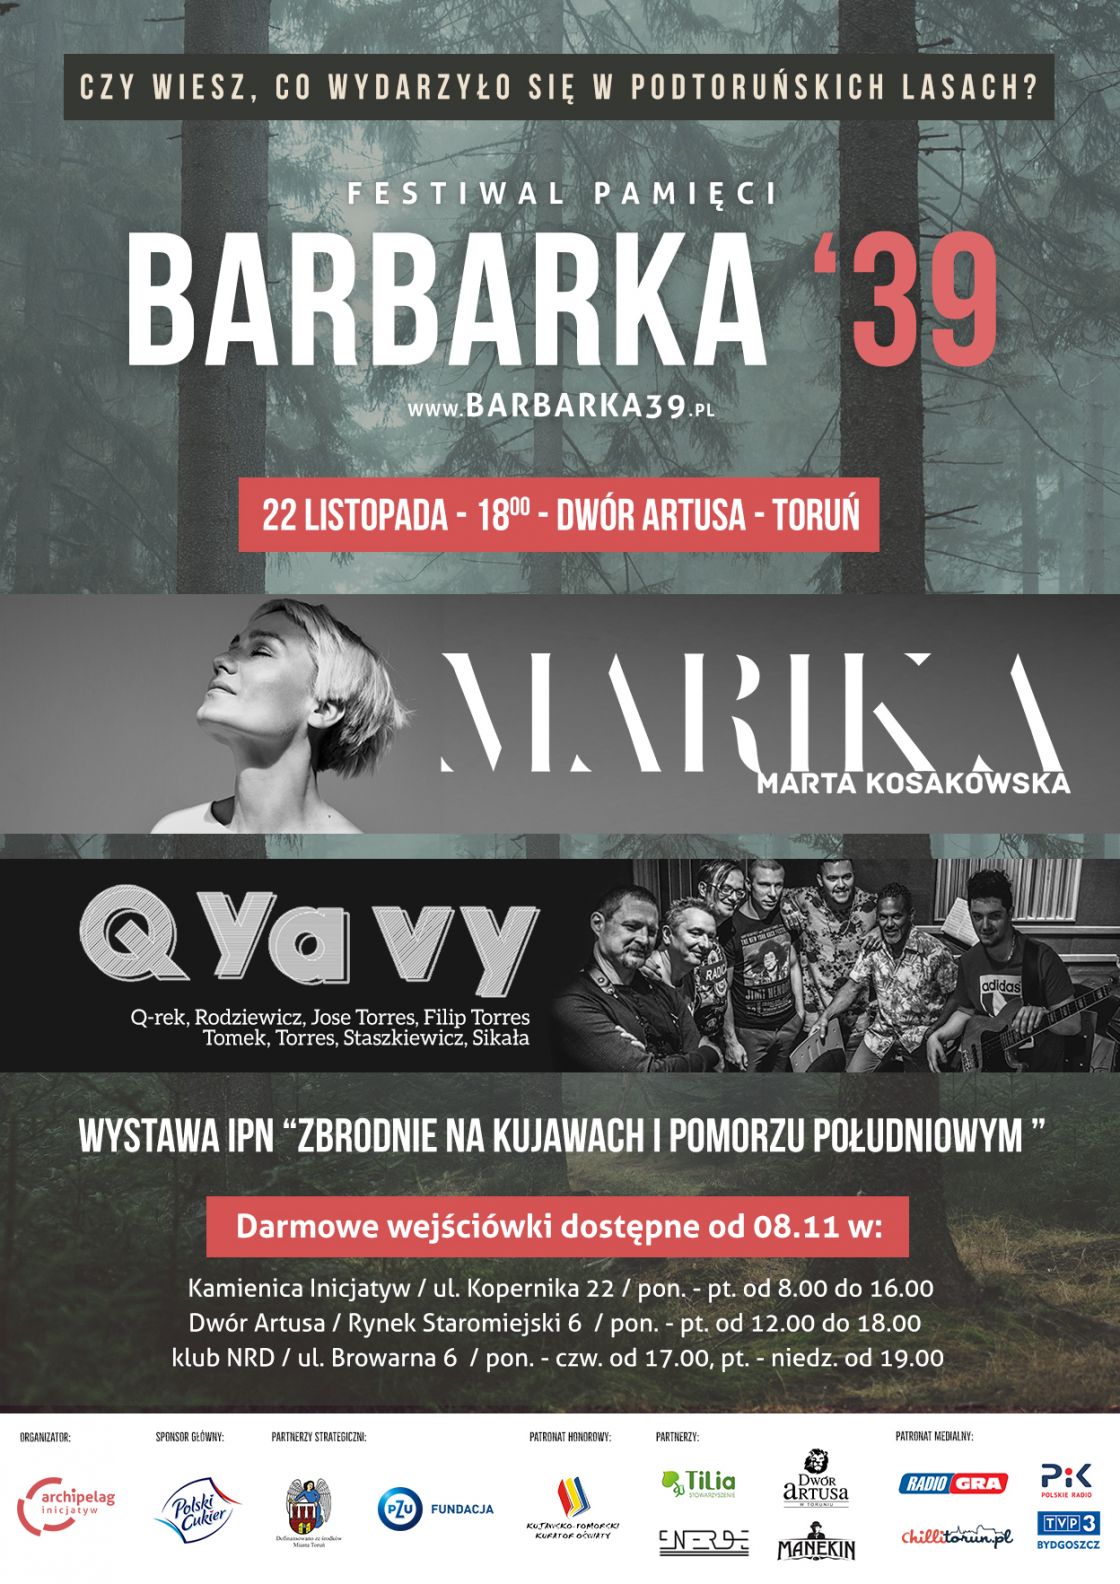 Marika i Q Ya Vy wystąpią na drugiej edycji Festiwalu Pamięci Barbarka ‘39